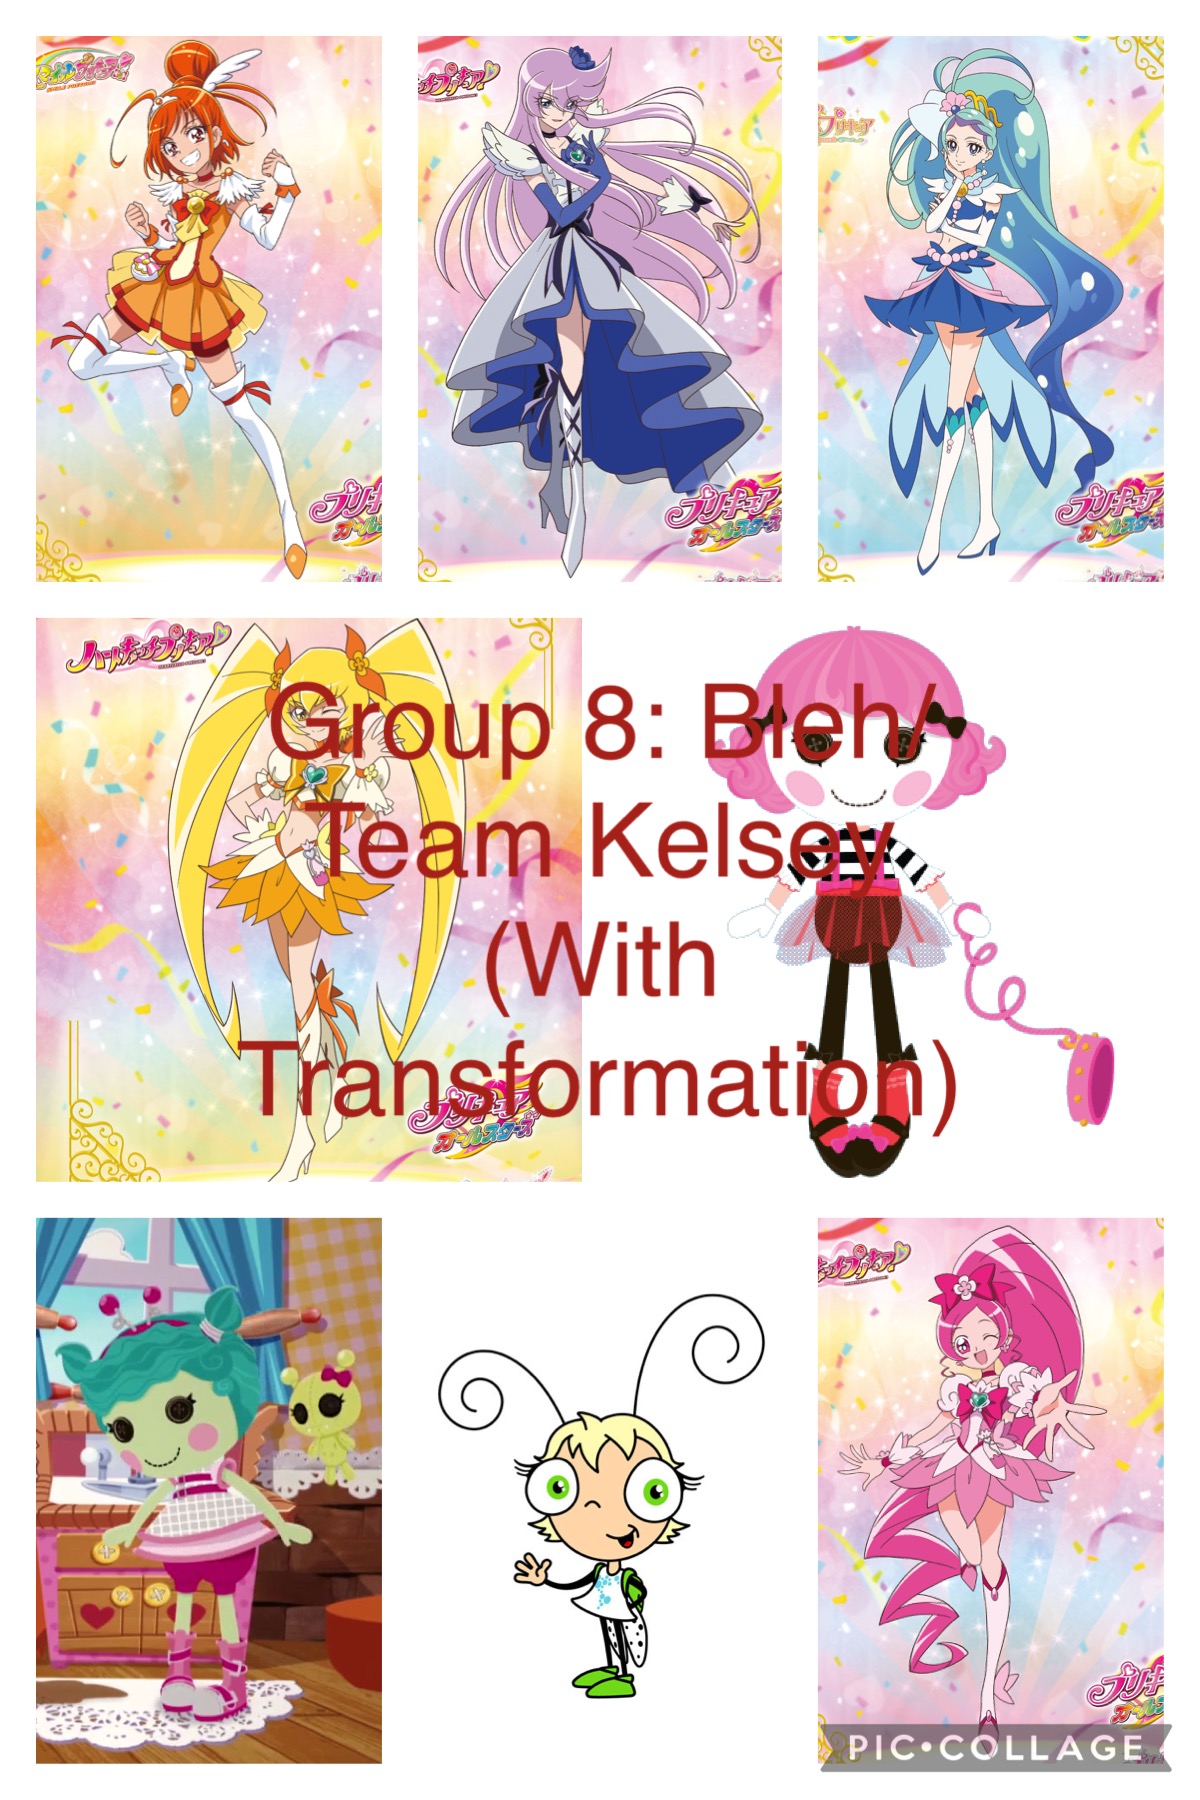 Cartoon Heroes in Pretty Cure All Stars F by mochamars1217 on DeviantArt